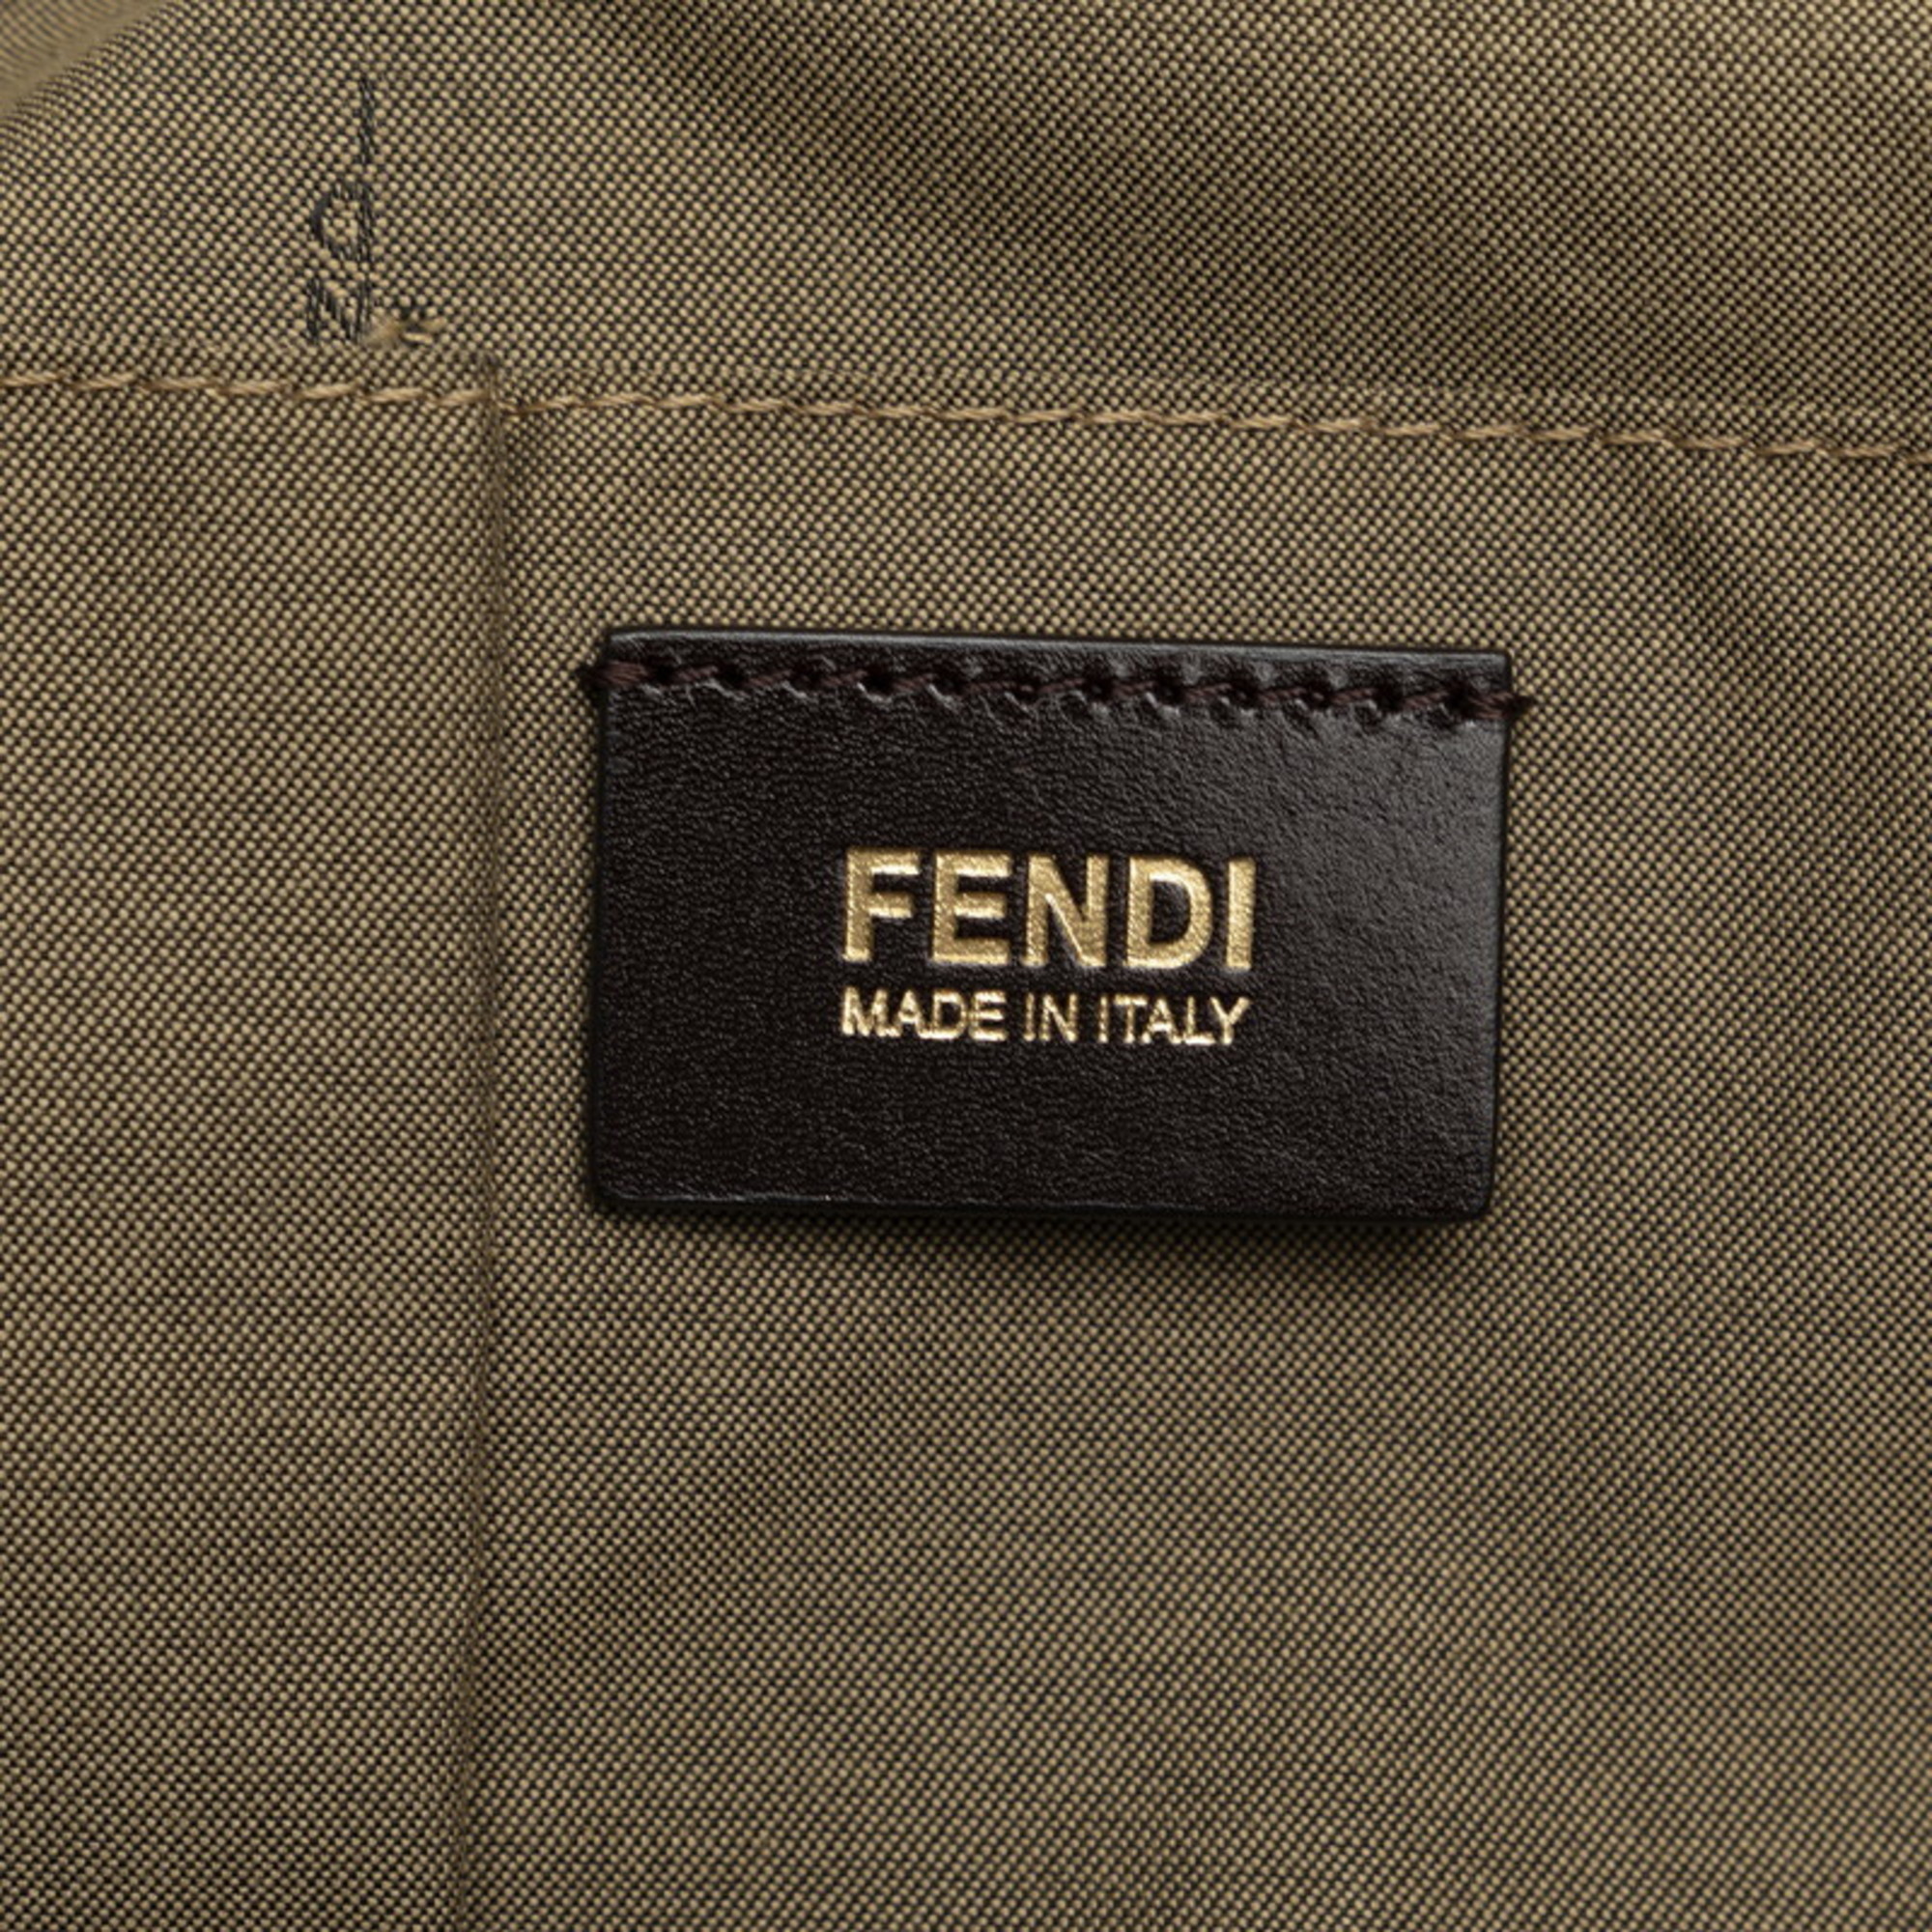 FENDI FF Hardware Lampo Tote Bag Shoulder 8BR636 Beige Leather Ladies